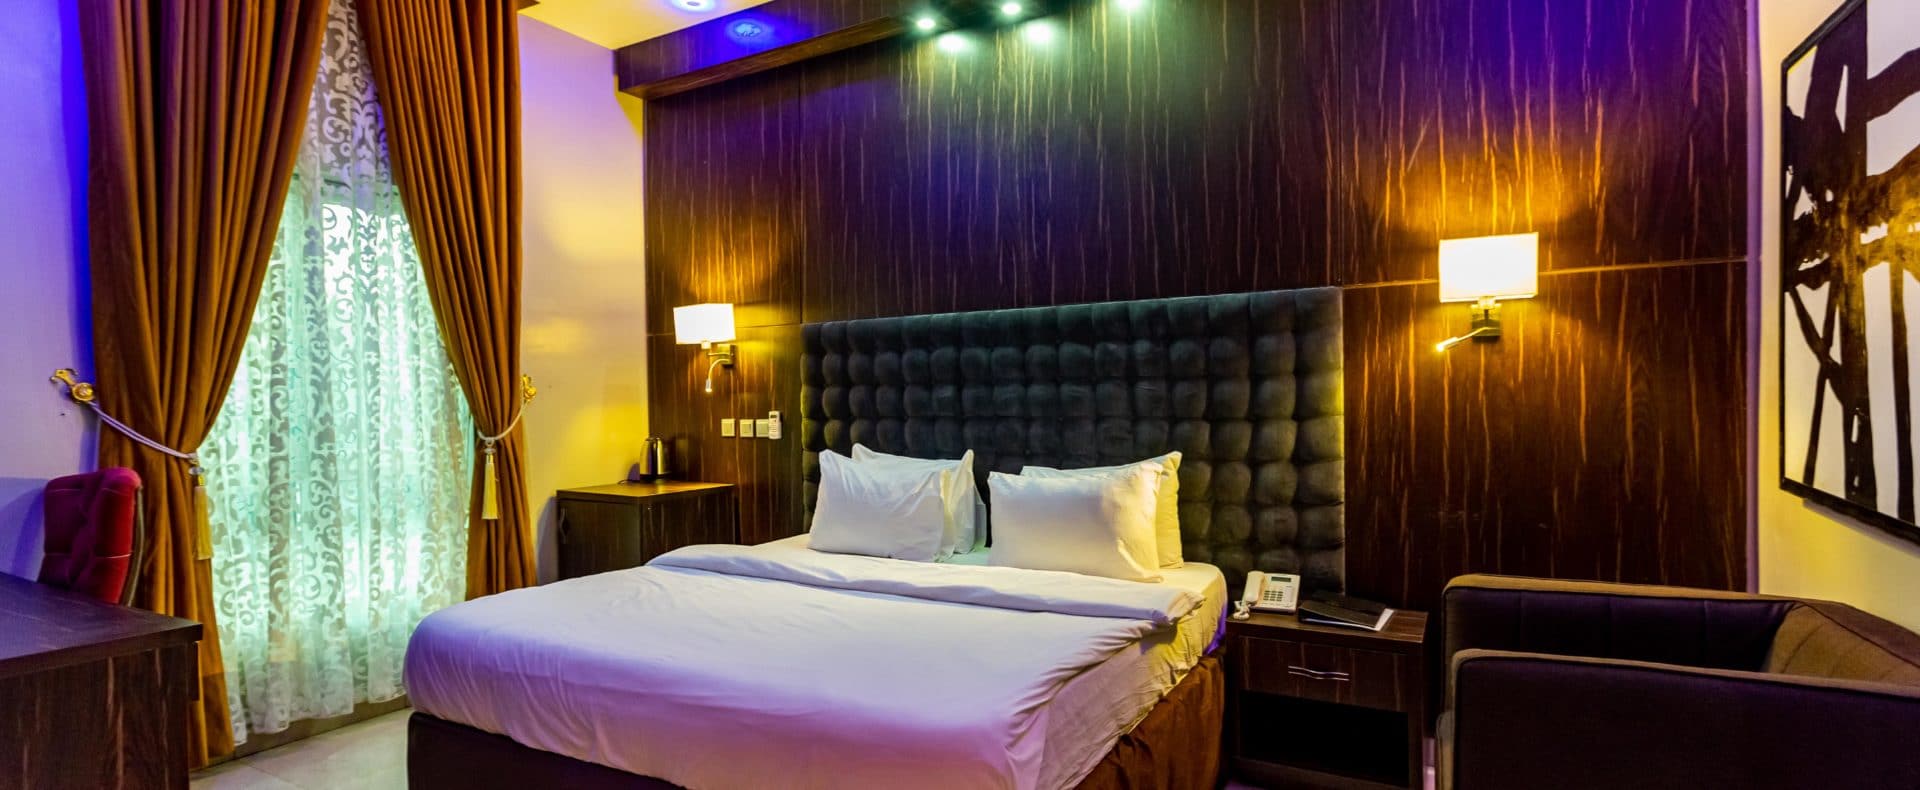 Hotel Silver Room In Owerri Imo Nigeria